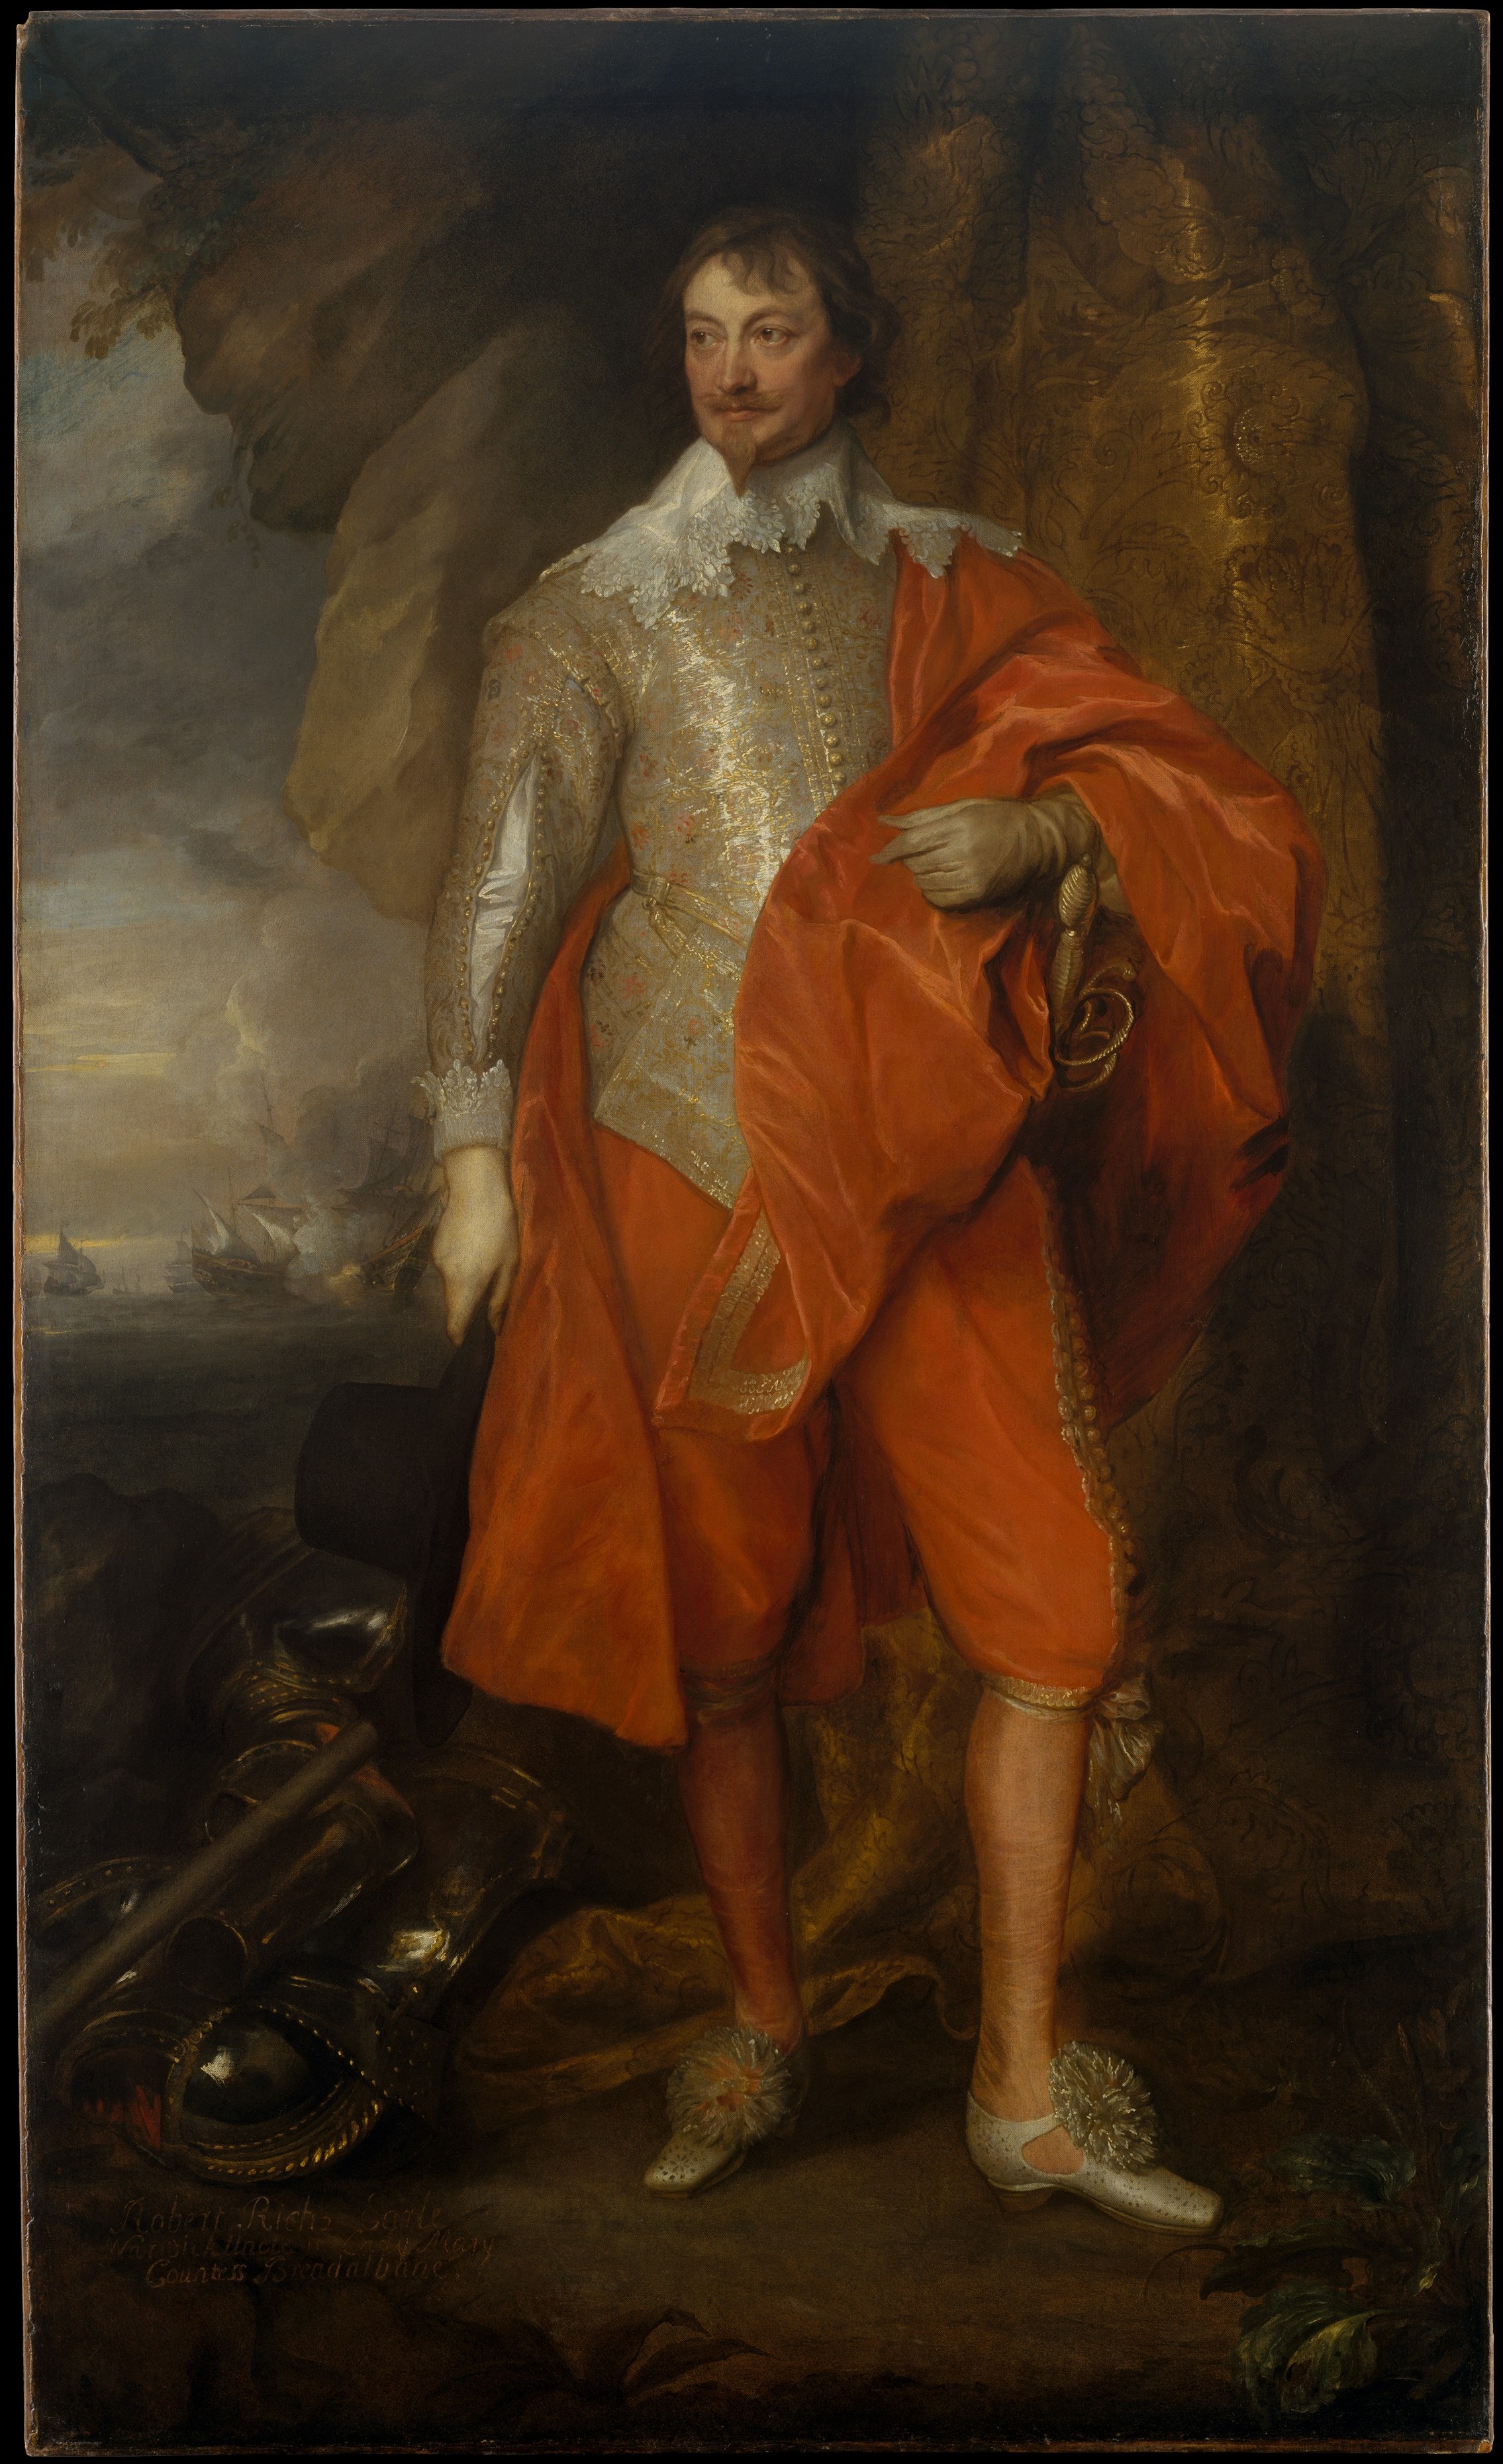 Robert Rich, Segundo Conde de Warwick by Anthony van Dyck - alrededor de 1632–35 - 208 x 128 cm Museo Metropolitano de Arte